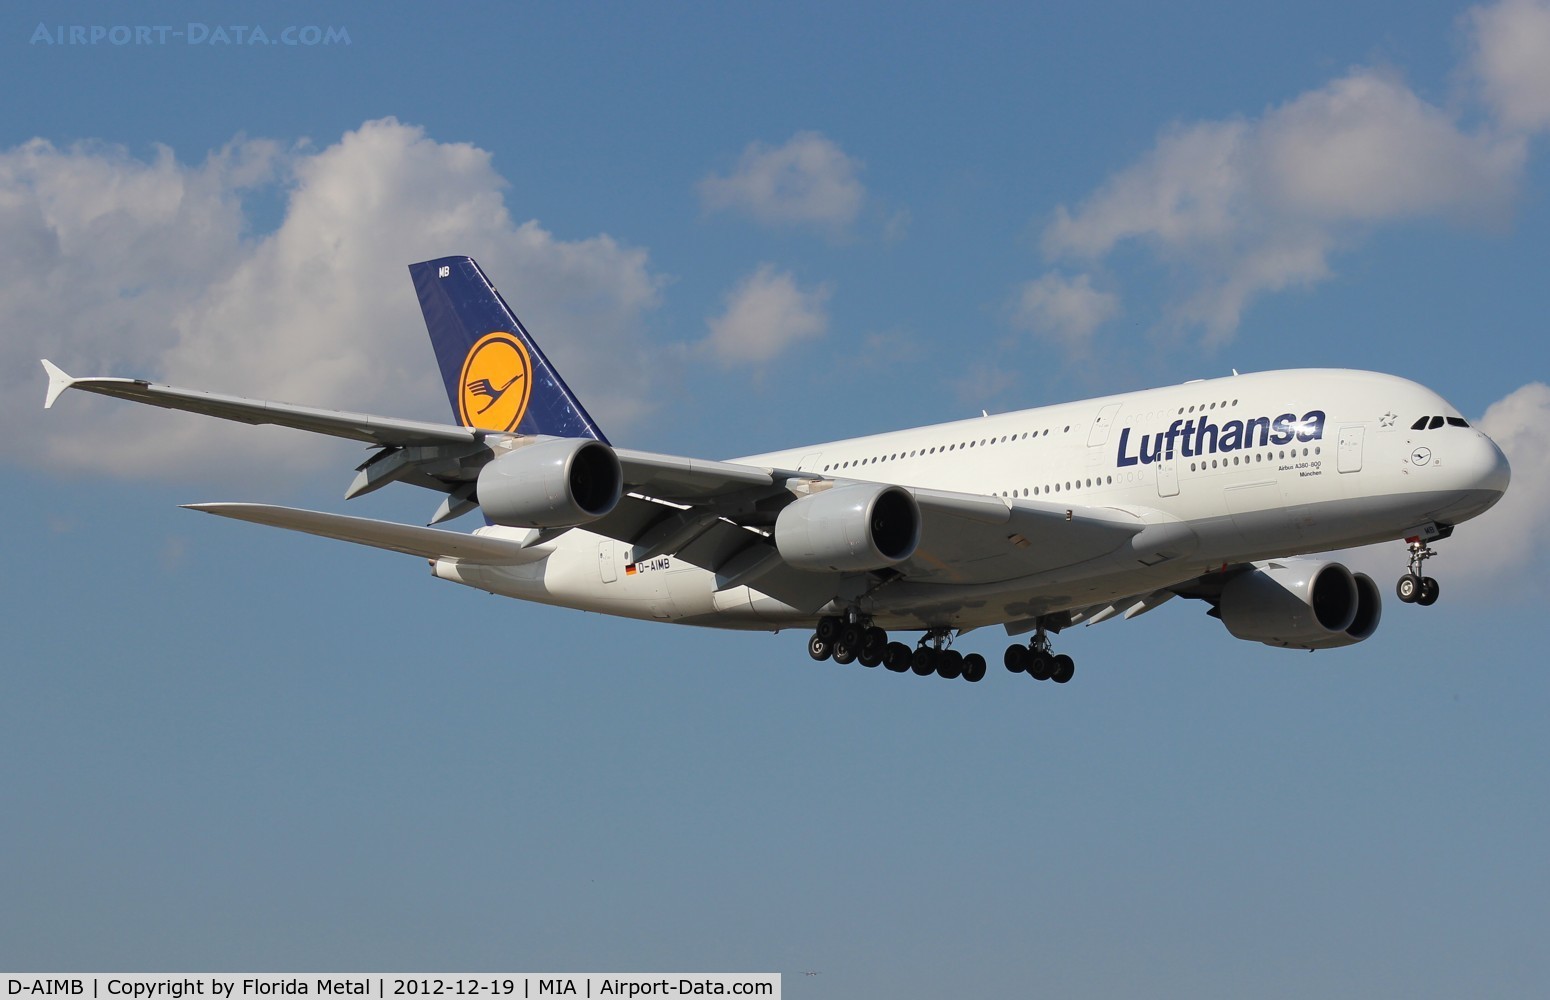 D-AIMB, 2010 Airbus A380-841 C/N 041, Lufthansa A380